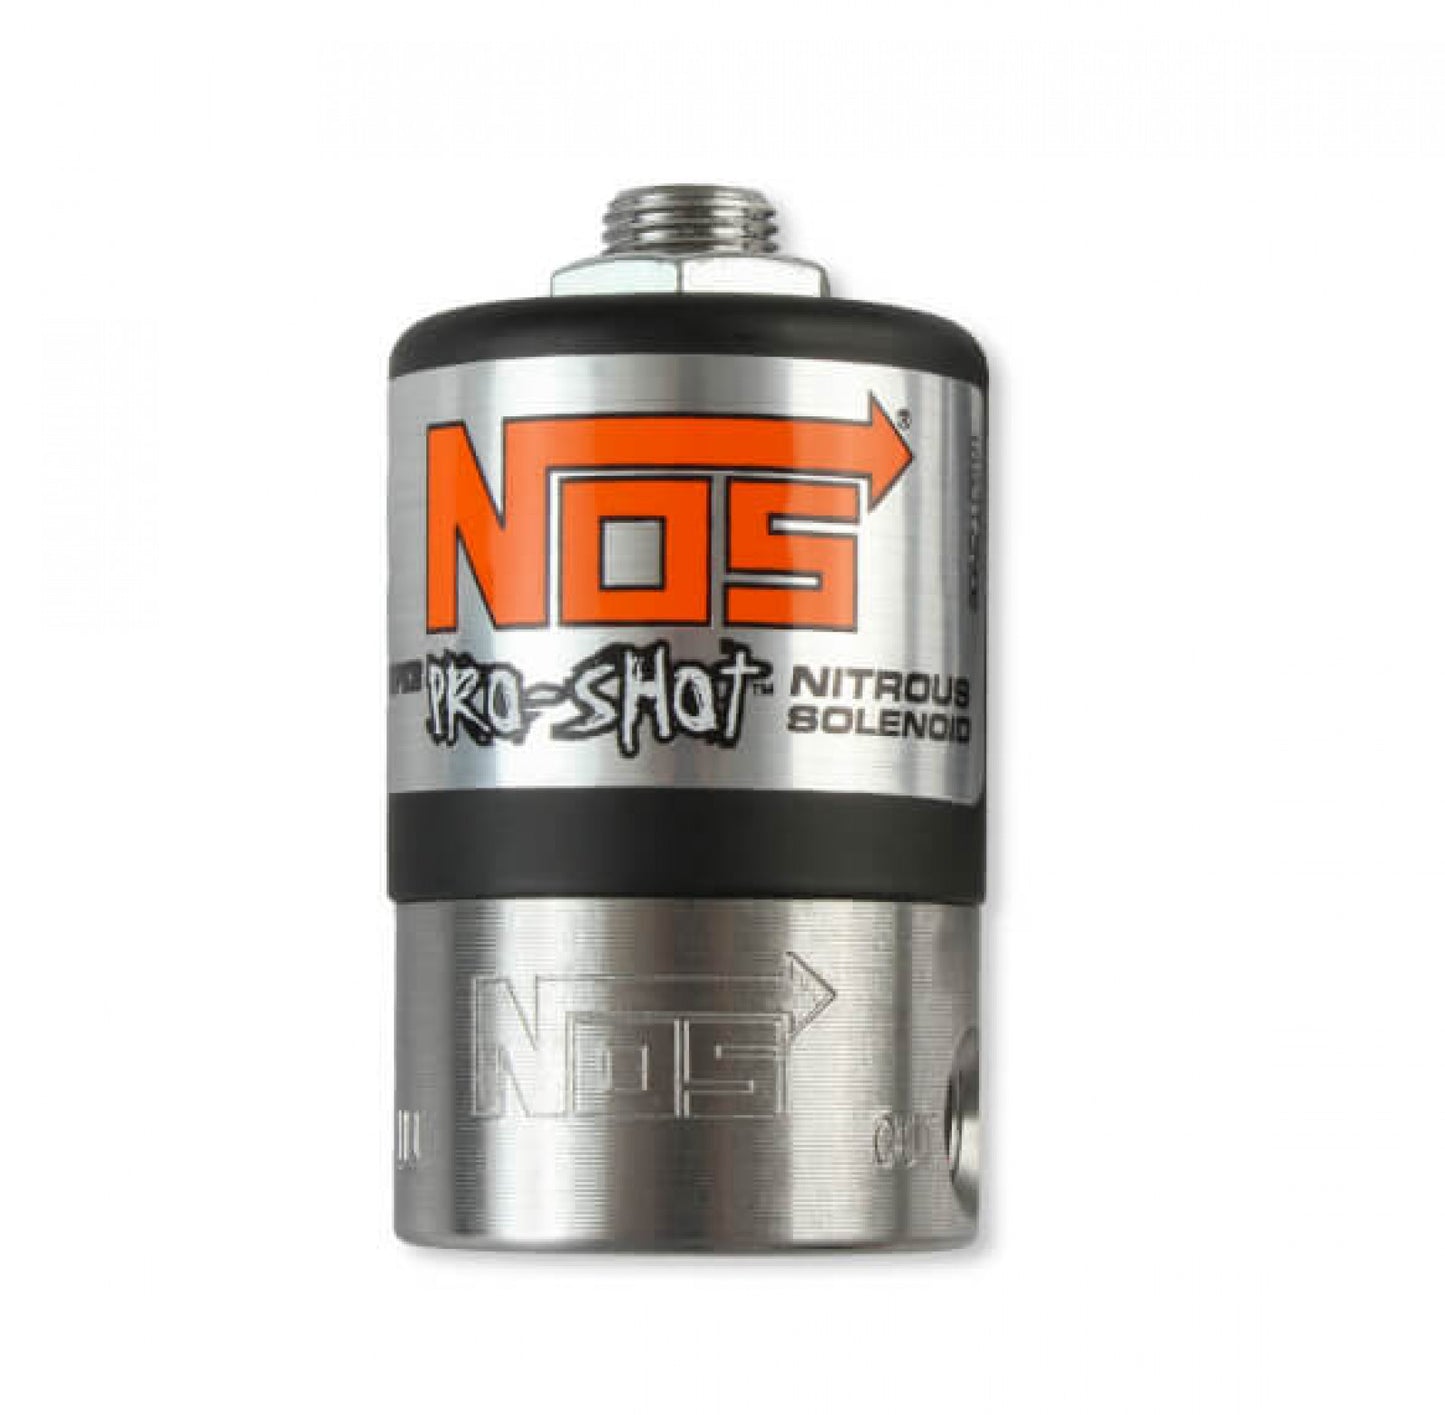 NOS Diesel Nitrous System 02522BNOS